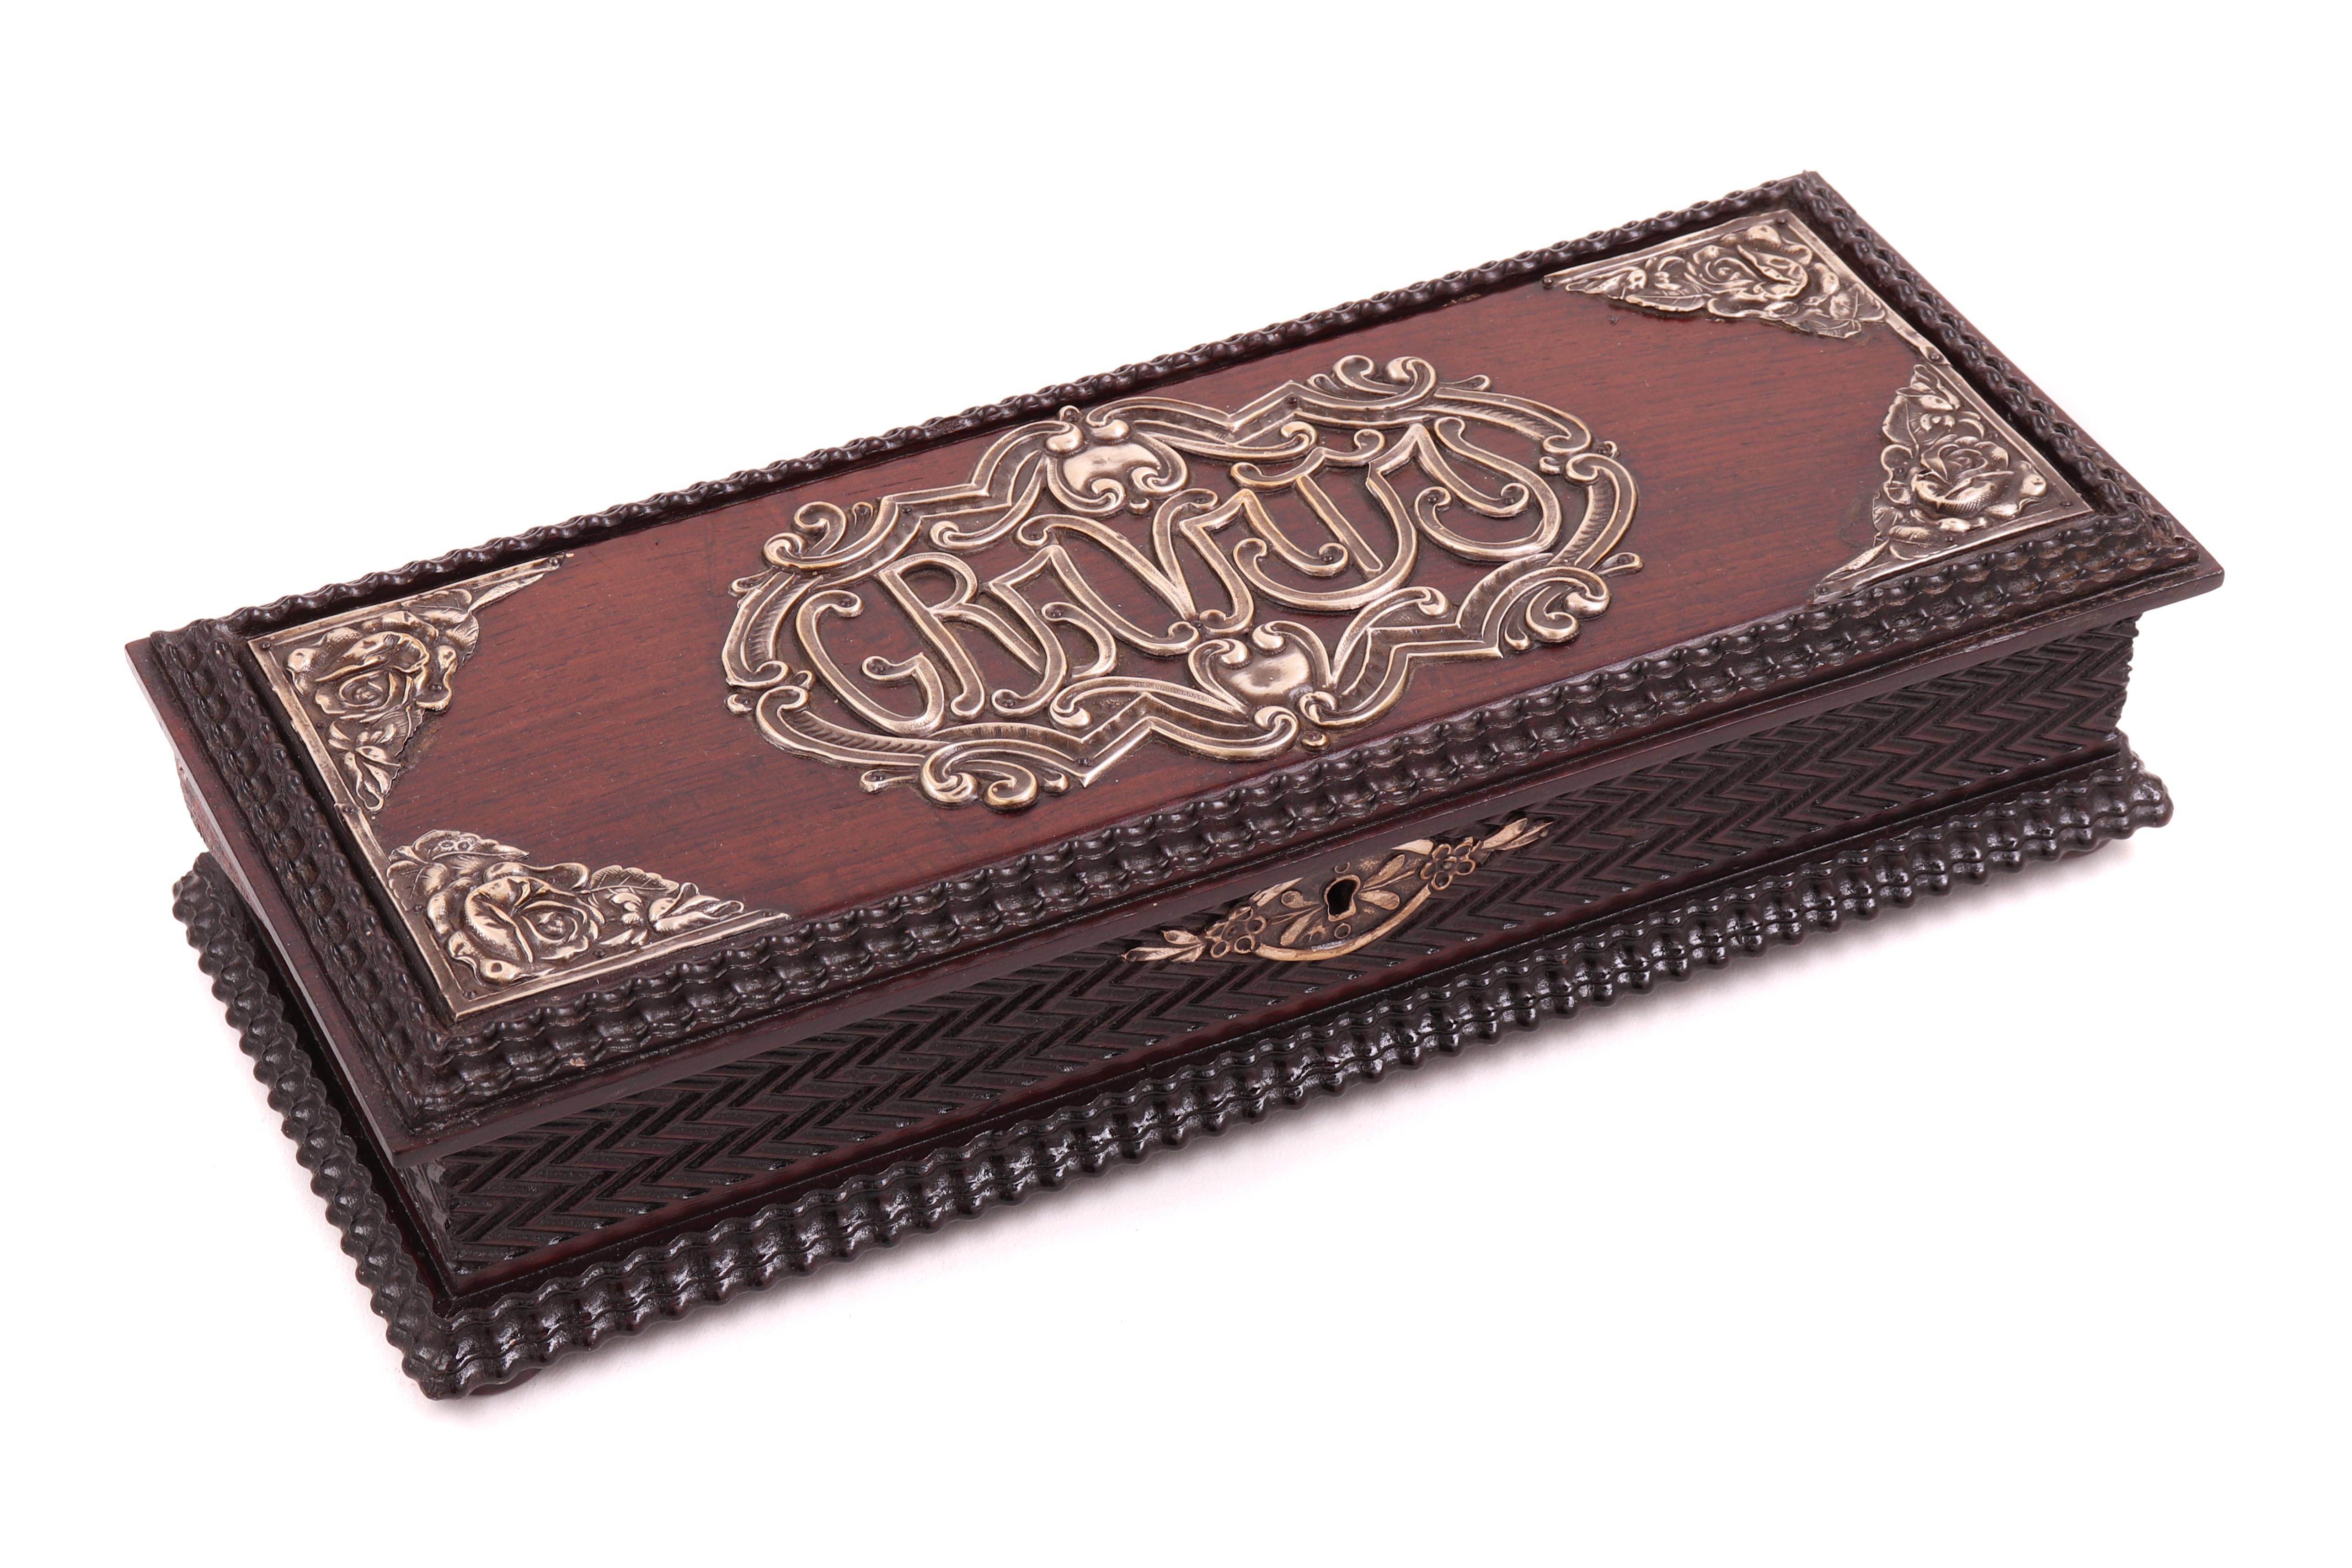 Caixa em madeira exótica "Gravatas" com aplicações em prata portuguesa